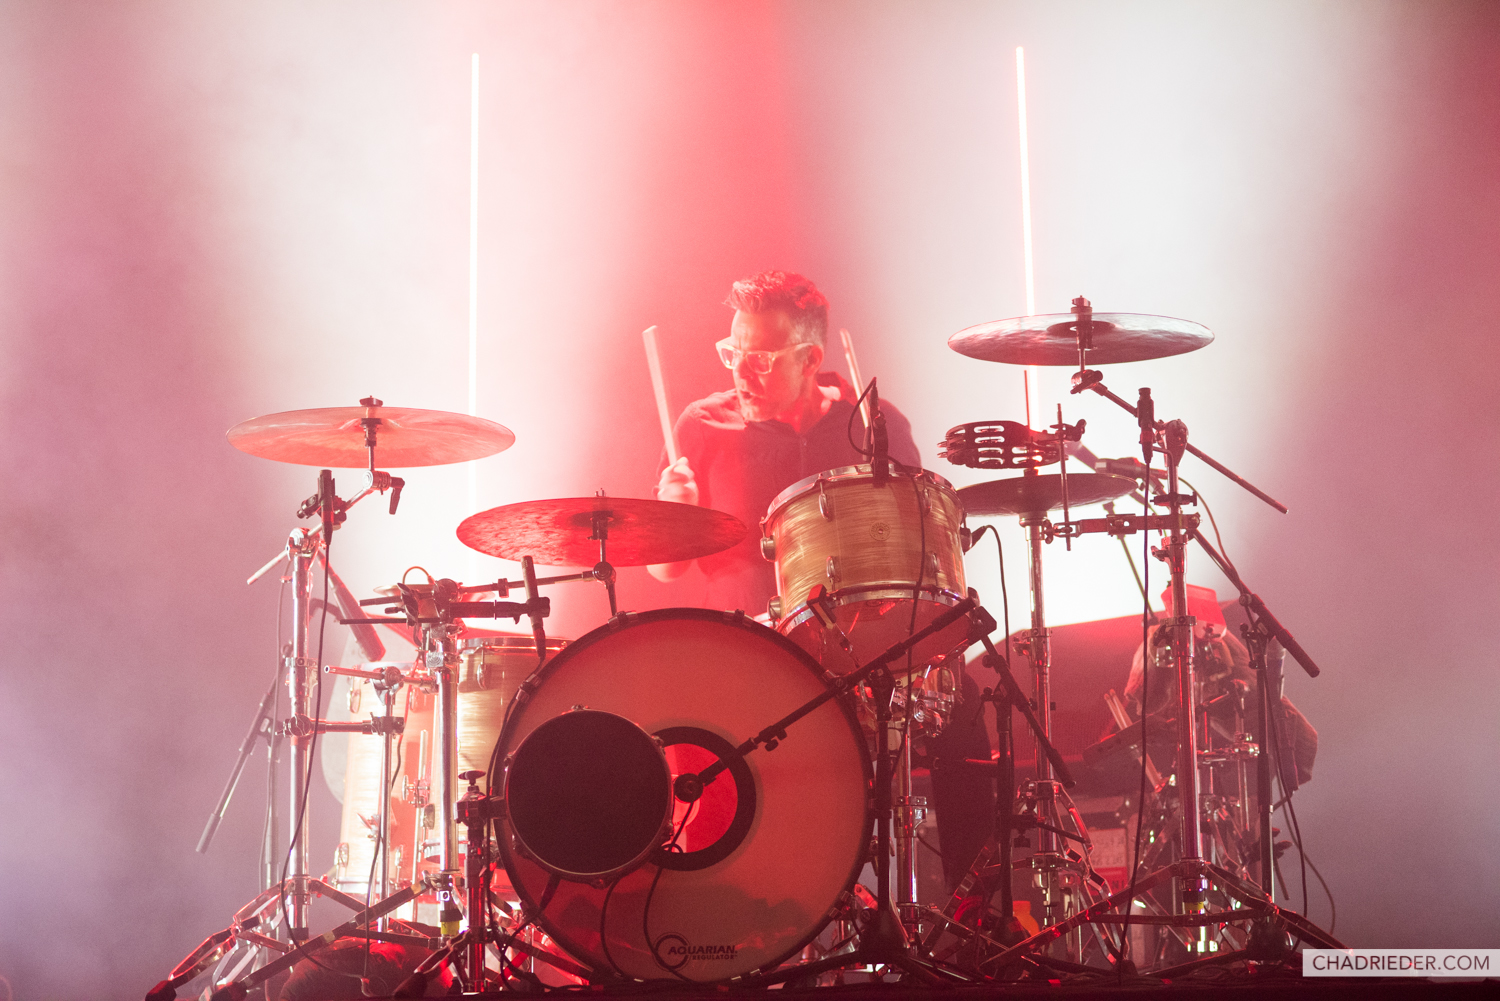 Interpol drummer